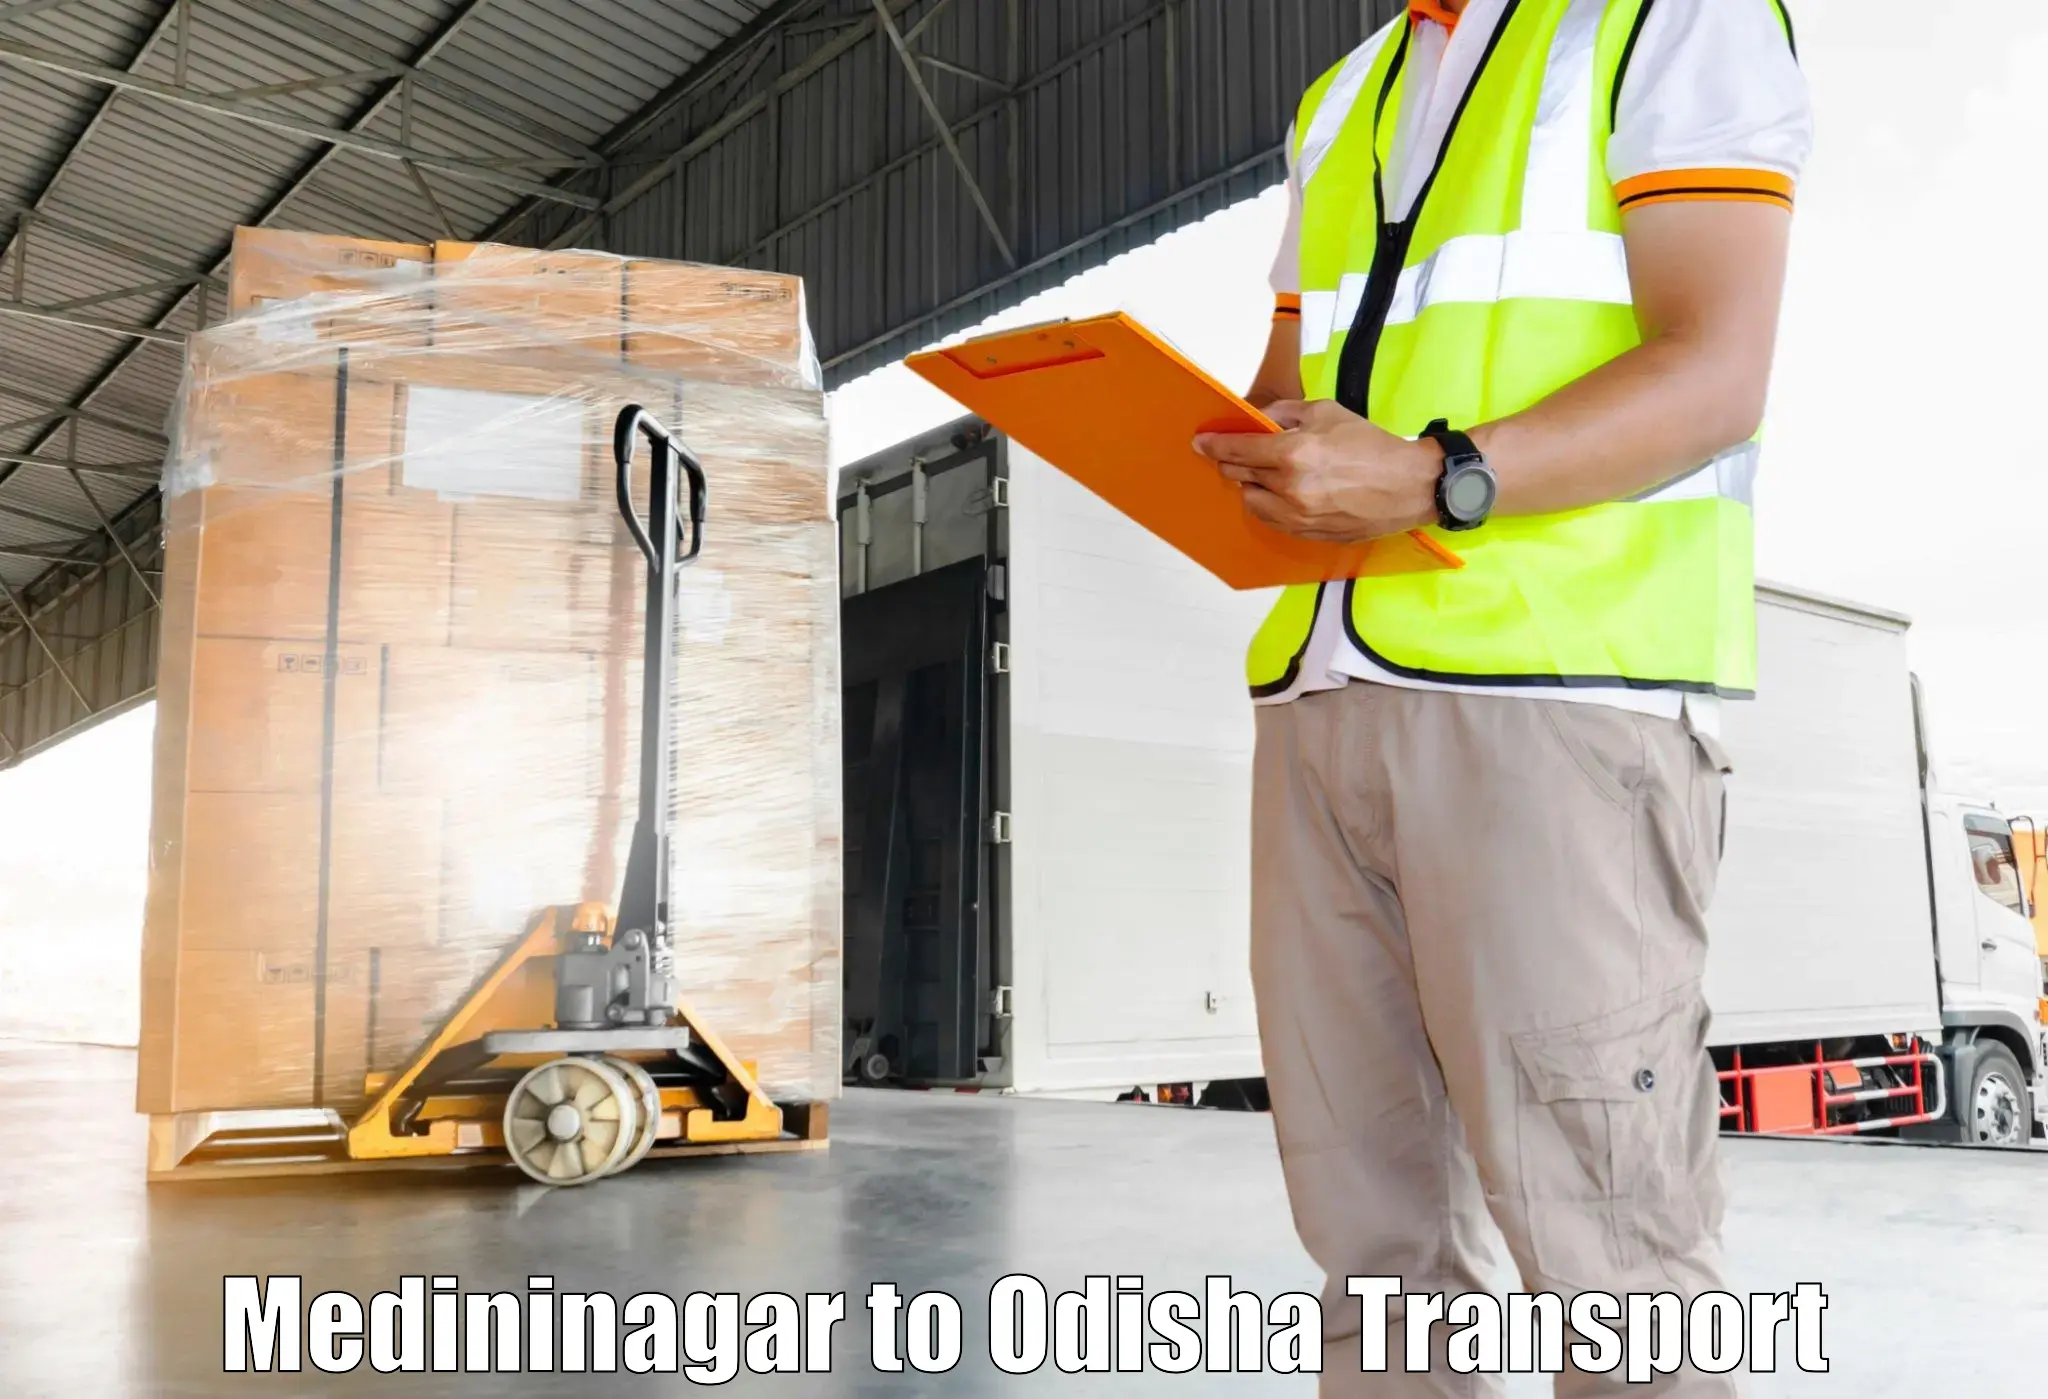 Container transportation services Medininagar to Junagarh Kalahandi